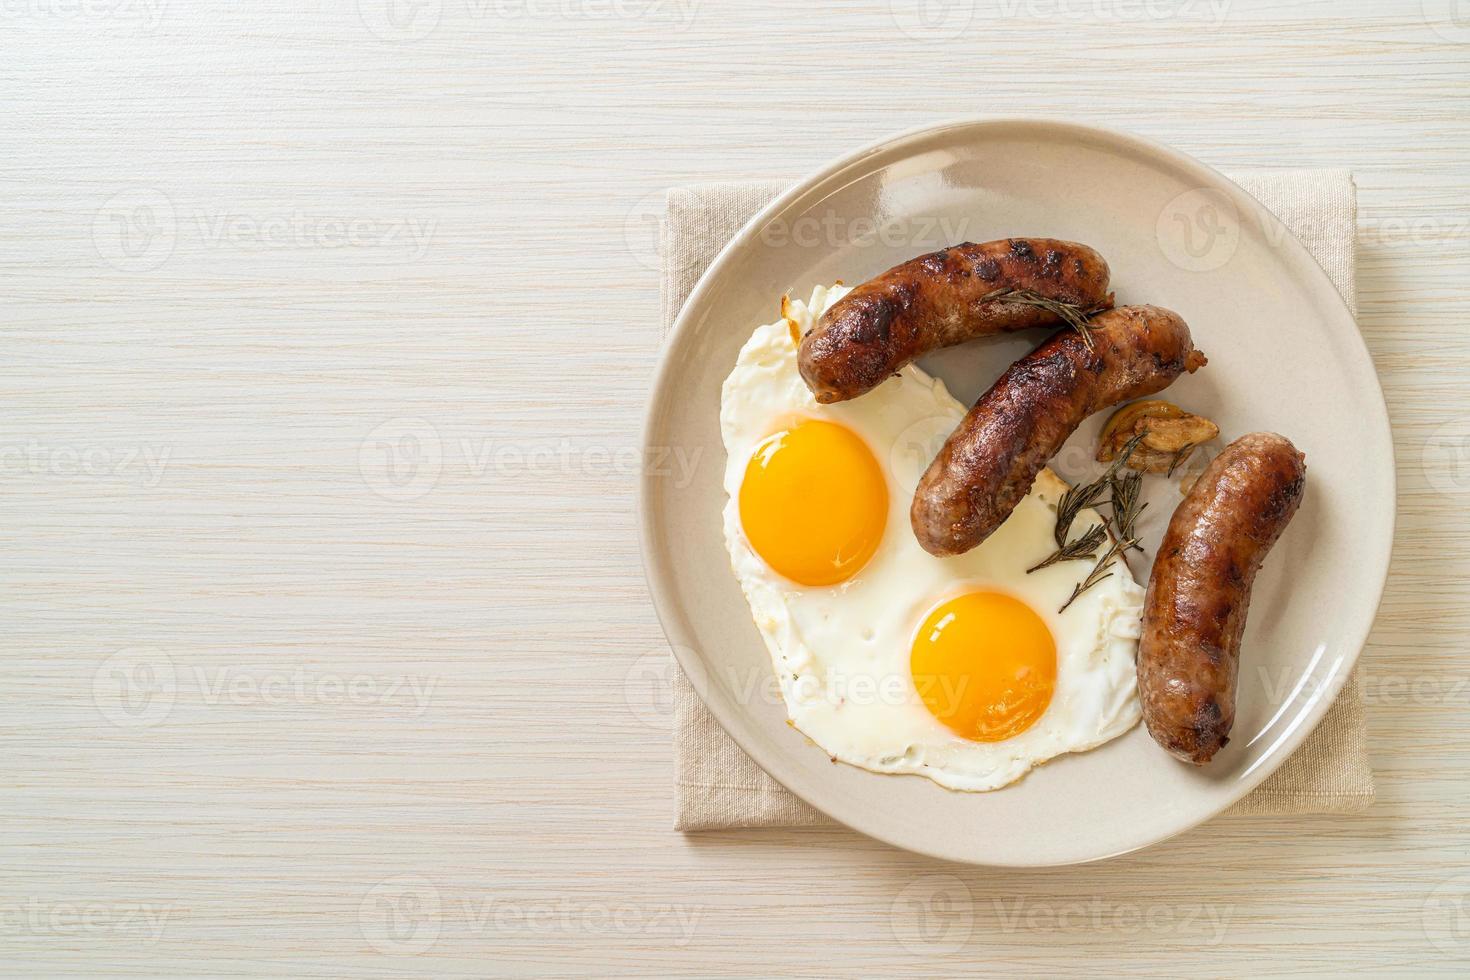 Doble huevo frito casero con salchicha de cerdo frita - para el desayuno foto